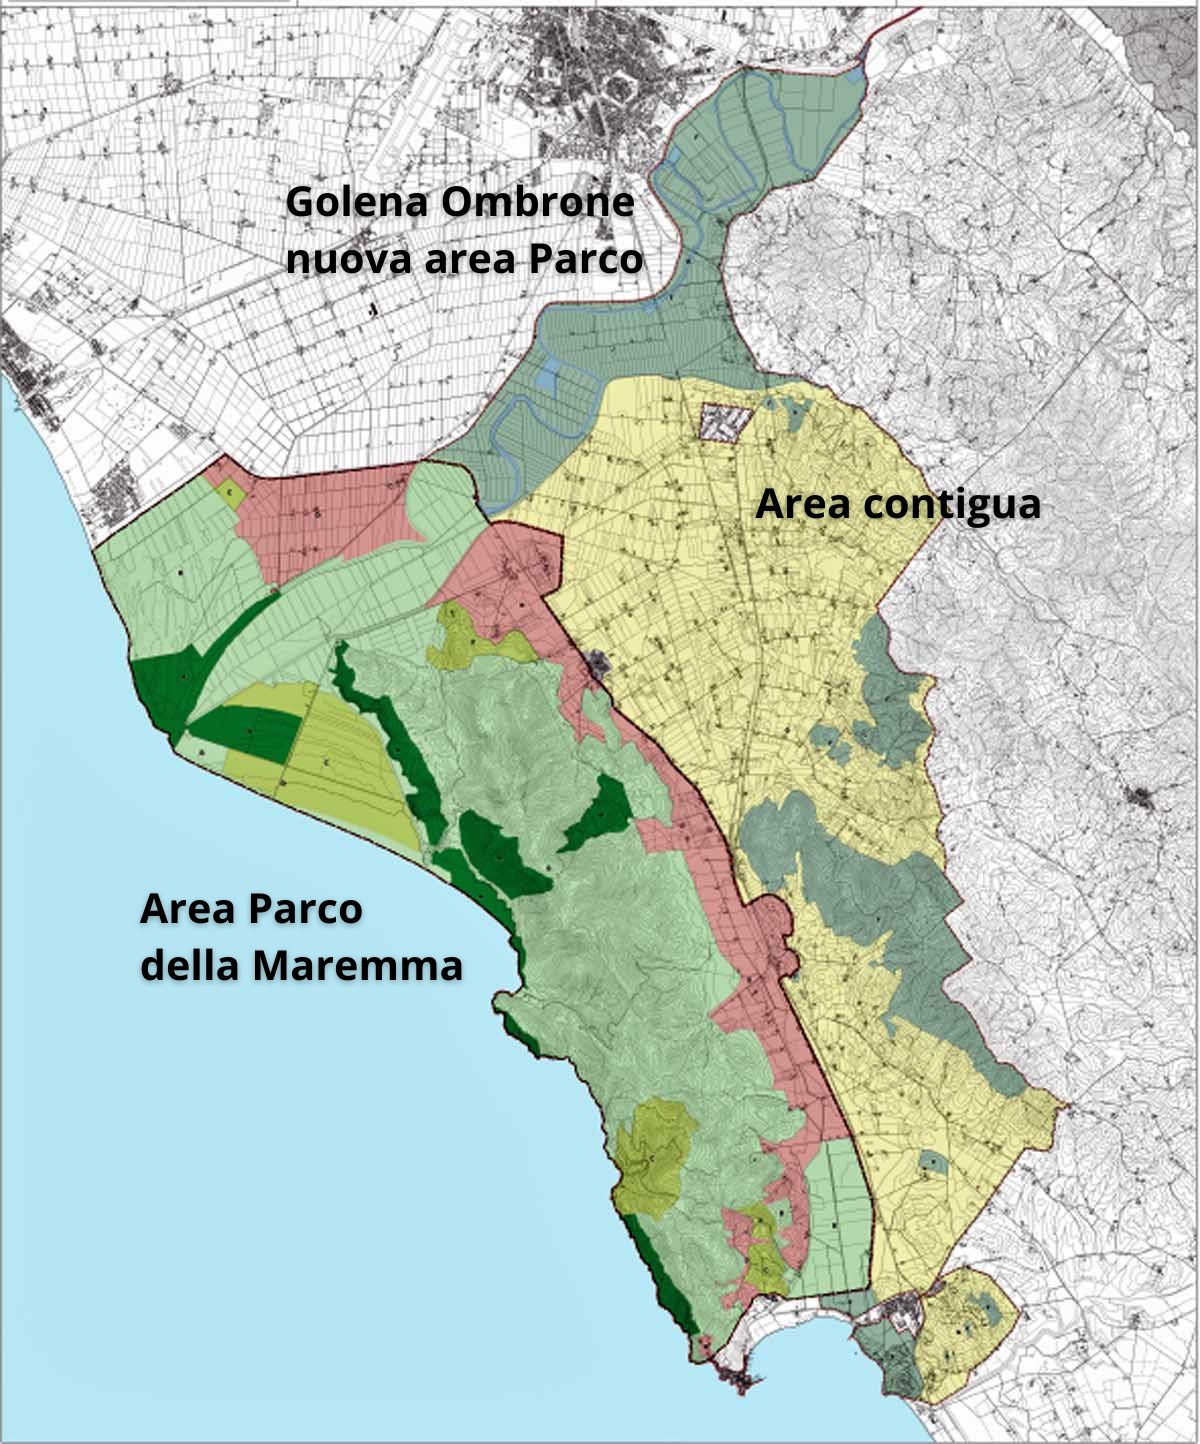 La mappa del Parco della Maremma, con le zone. In alto, in verde, la golena che diventerà Parco